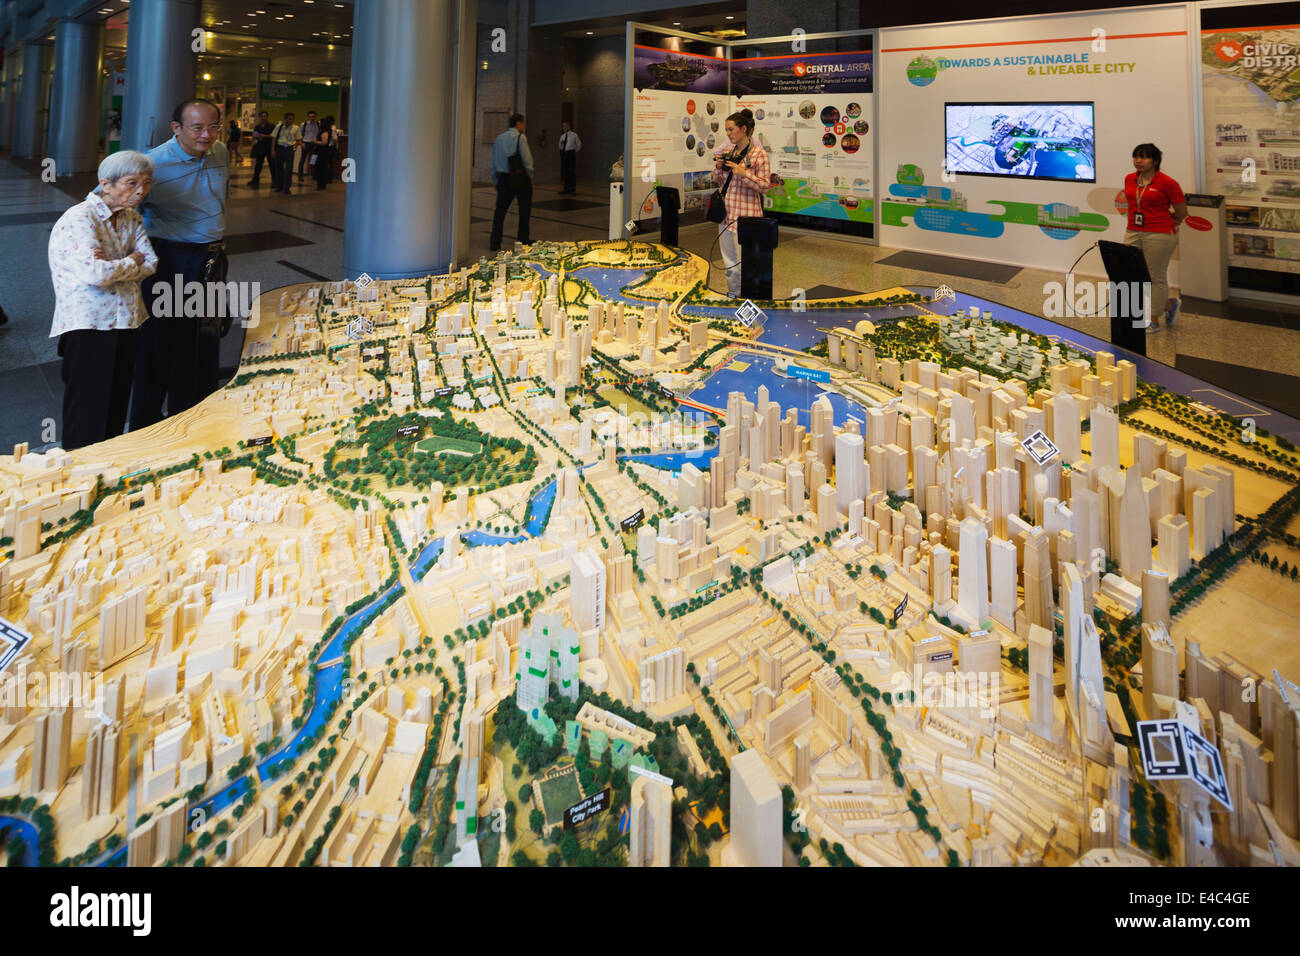 South East Asia, Singapur, Singapore City Gallery, Planungsbüro, Stadt im Maßstab von Singapur Stockfoto